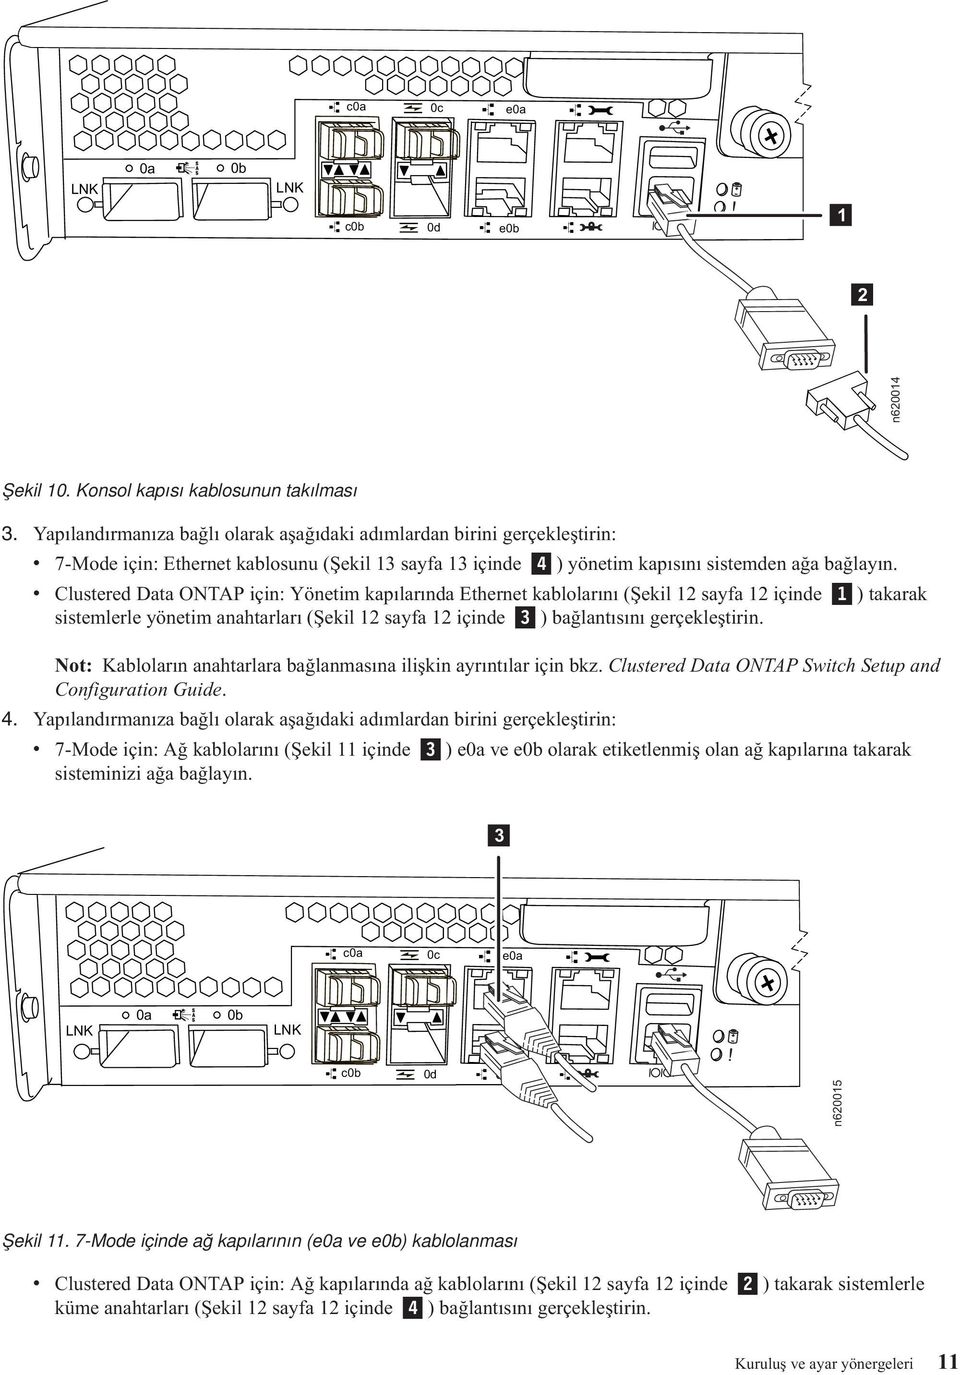 kapısını sistemden ağa bağlayın v Clustered Data ONTAP için: Yönetim kapılarında Ethernet kablolarını (Şekil 2 sayfa 2 içinde ) takarak sistemlerle yönetim anahtarları (Şekil 2 sayfa 2 içinde 3 )